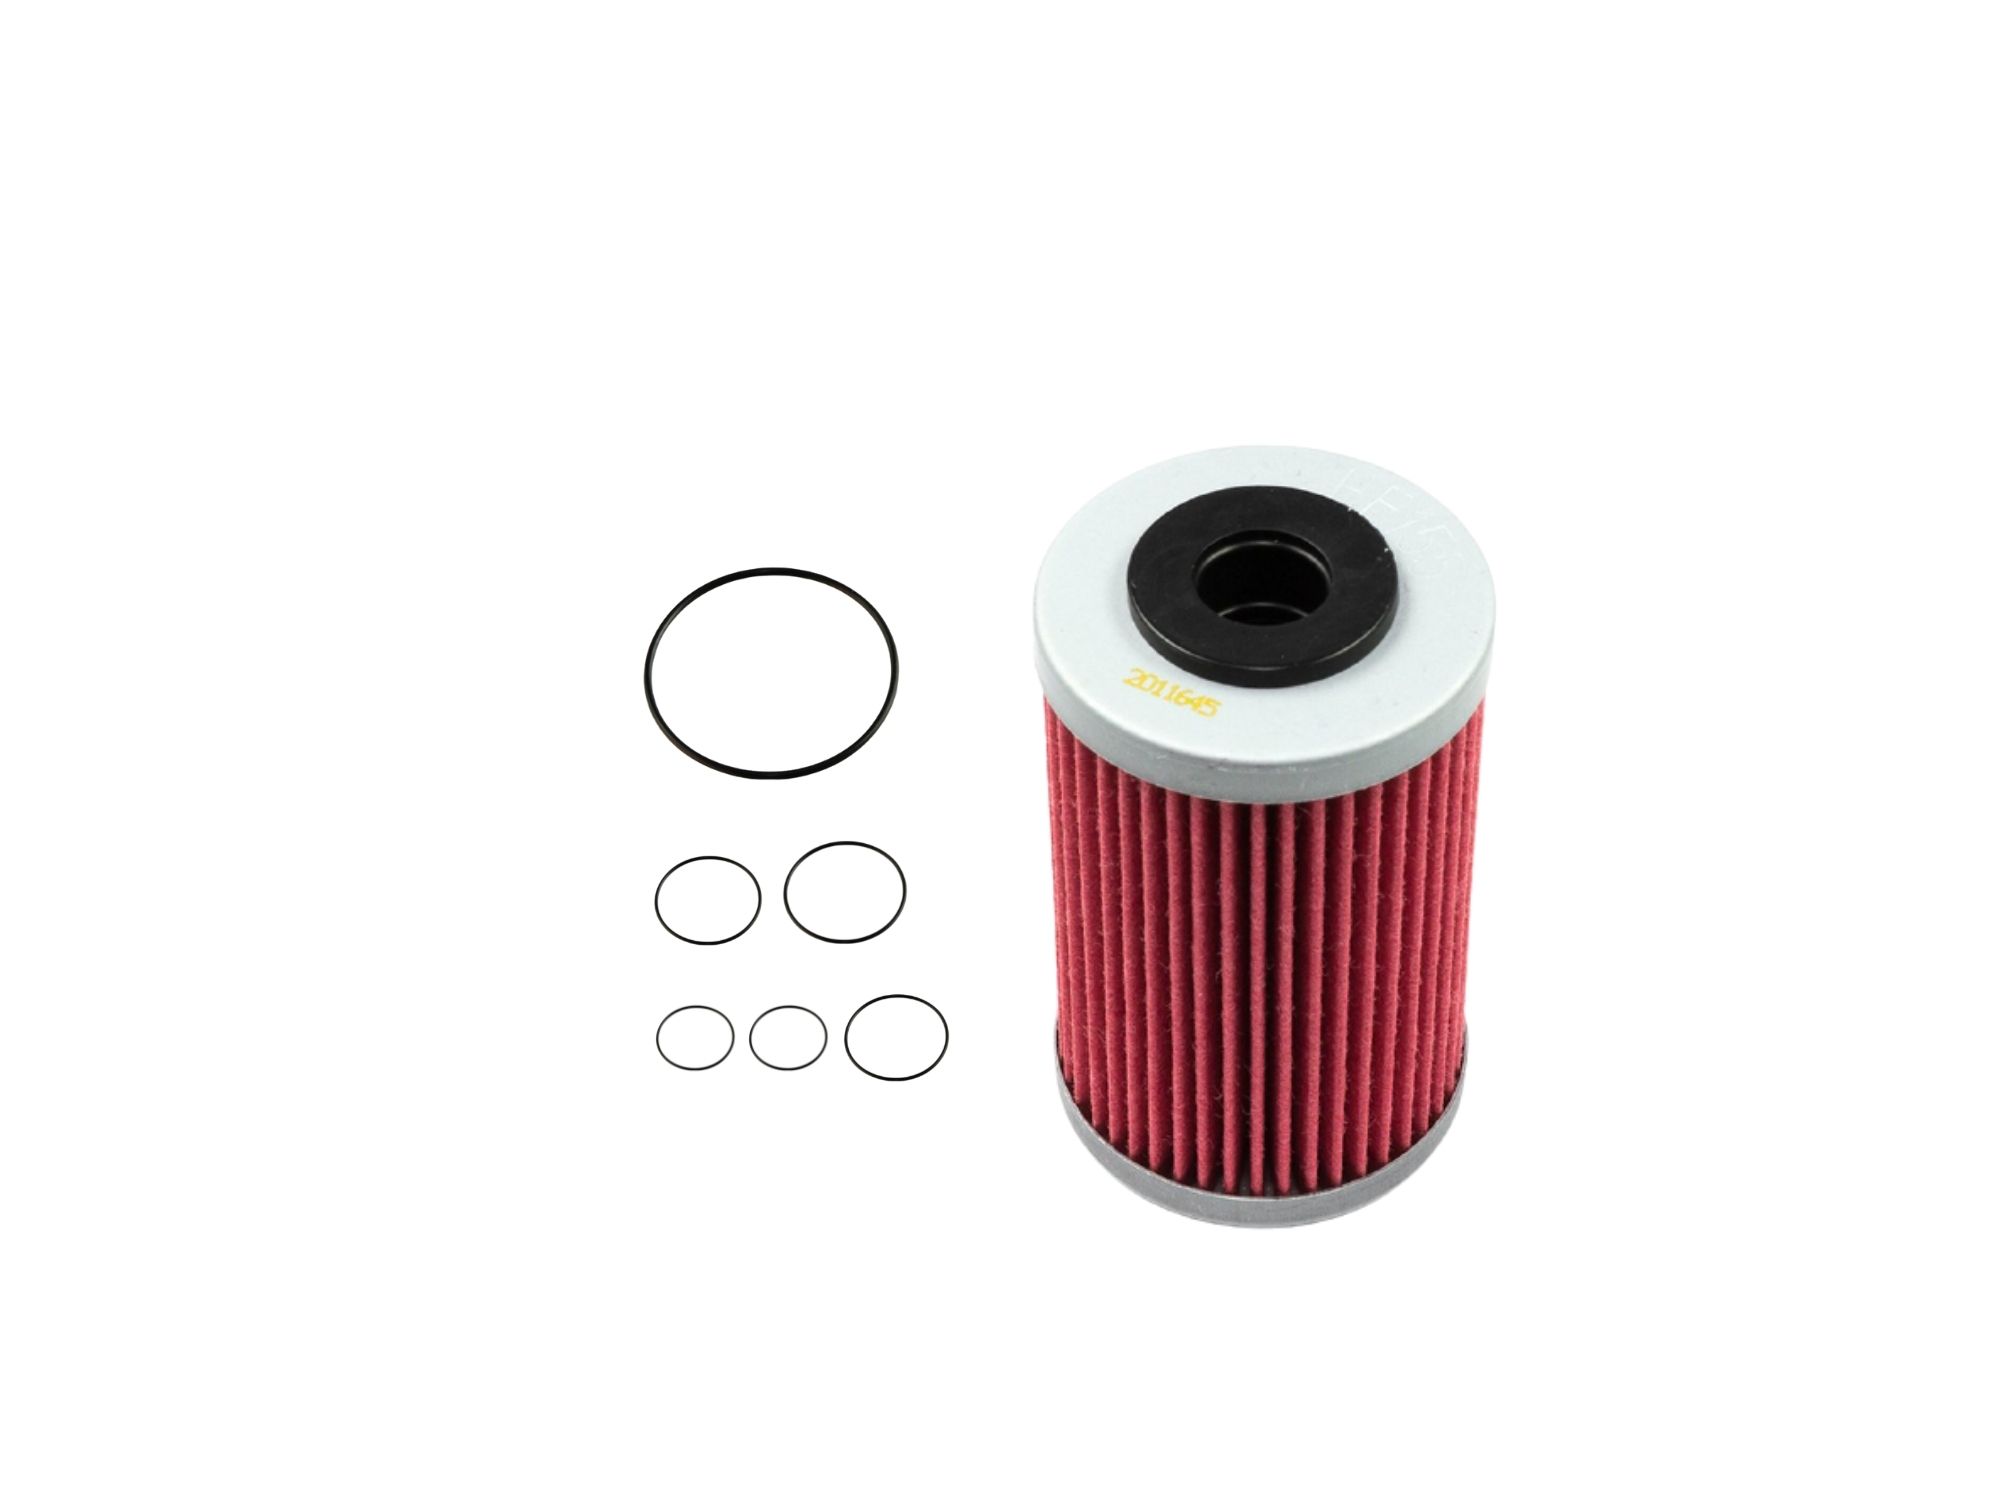 Oil filter kit suitable for KTM 390 Duke 13-24